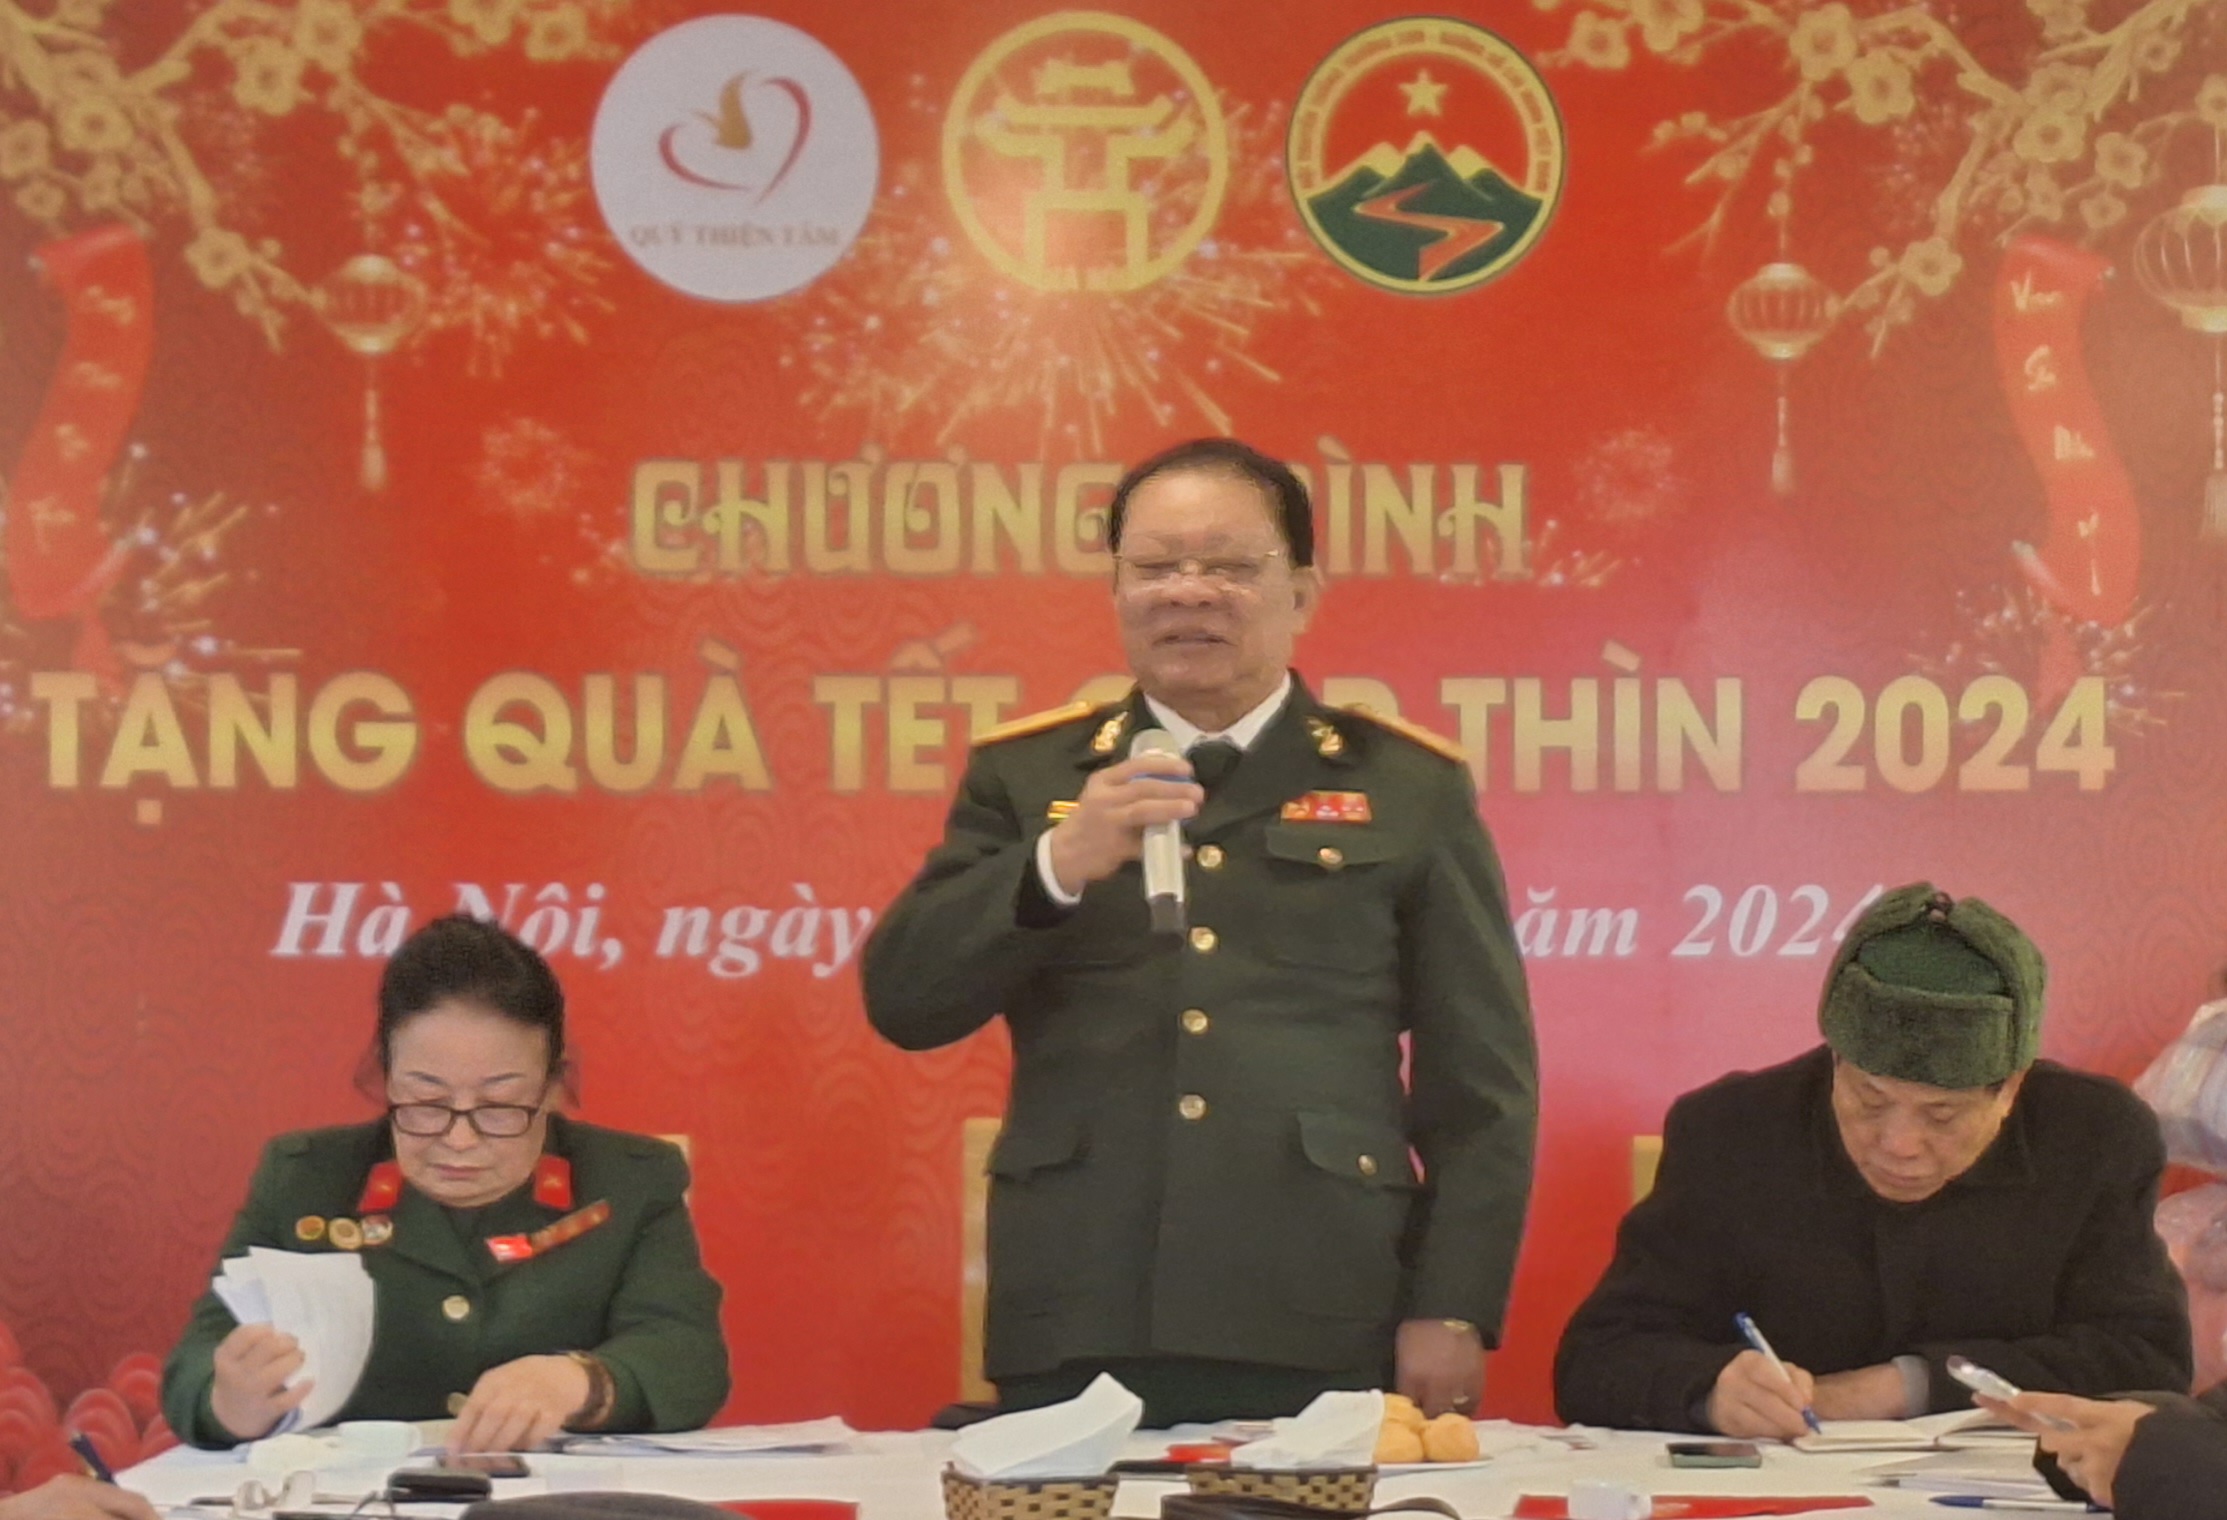 Hội Trường Sơn thành phố Hà Nội tổng kết công tác hội năm 2023 và trao quà đón tết Giáp Thìn của Quỹ Thiện Tâm cho hội viên Trường Sơn